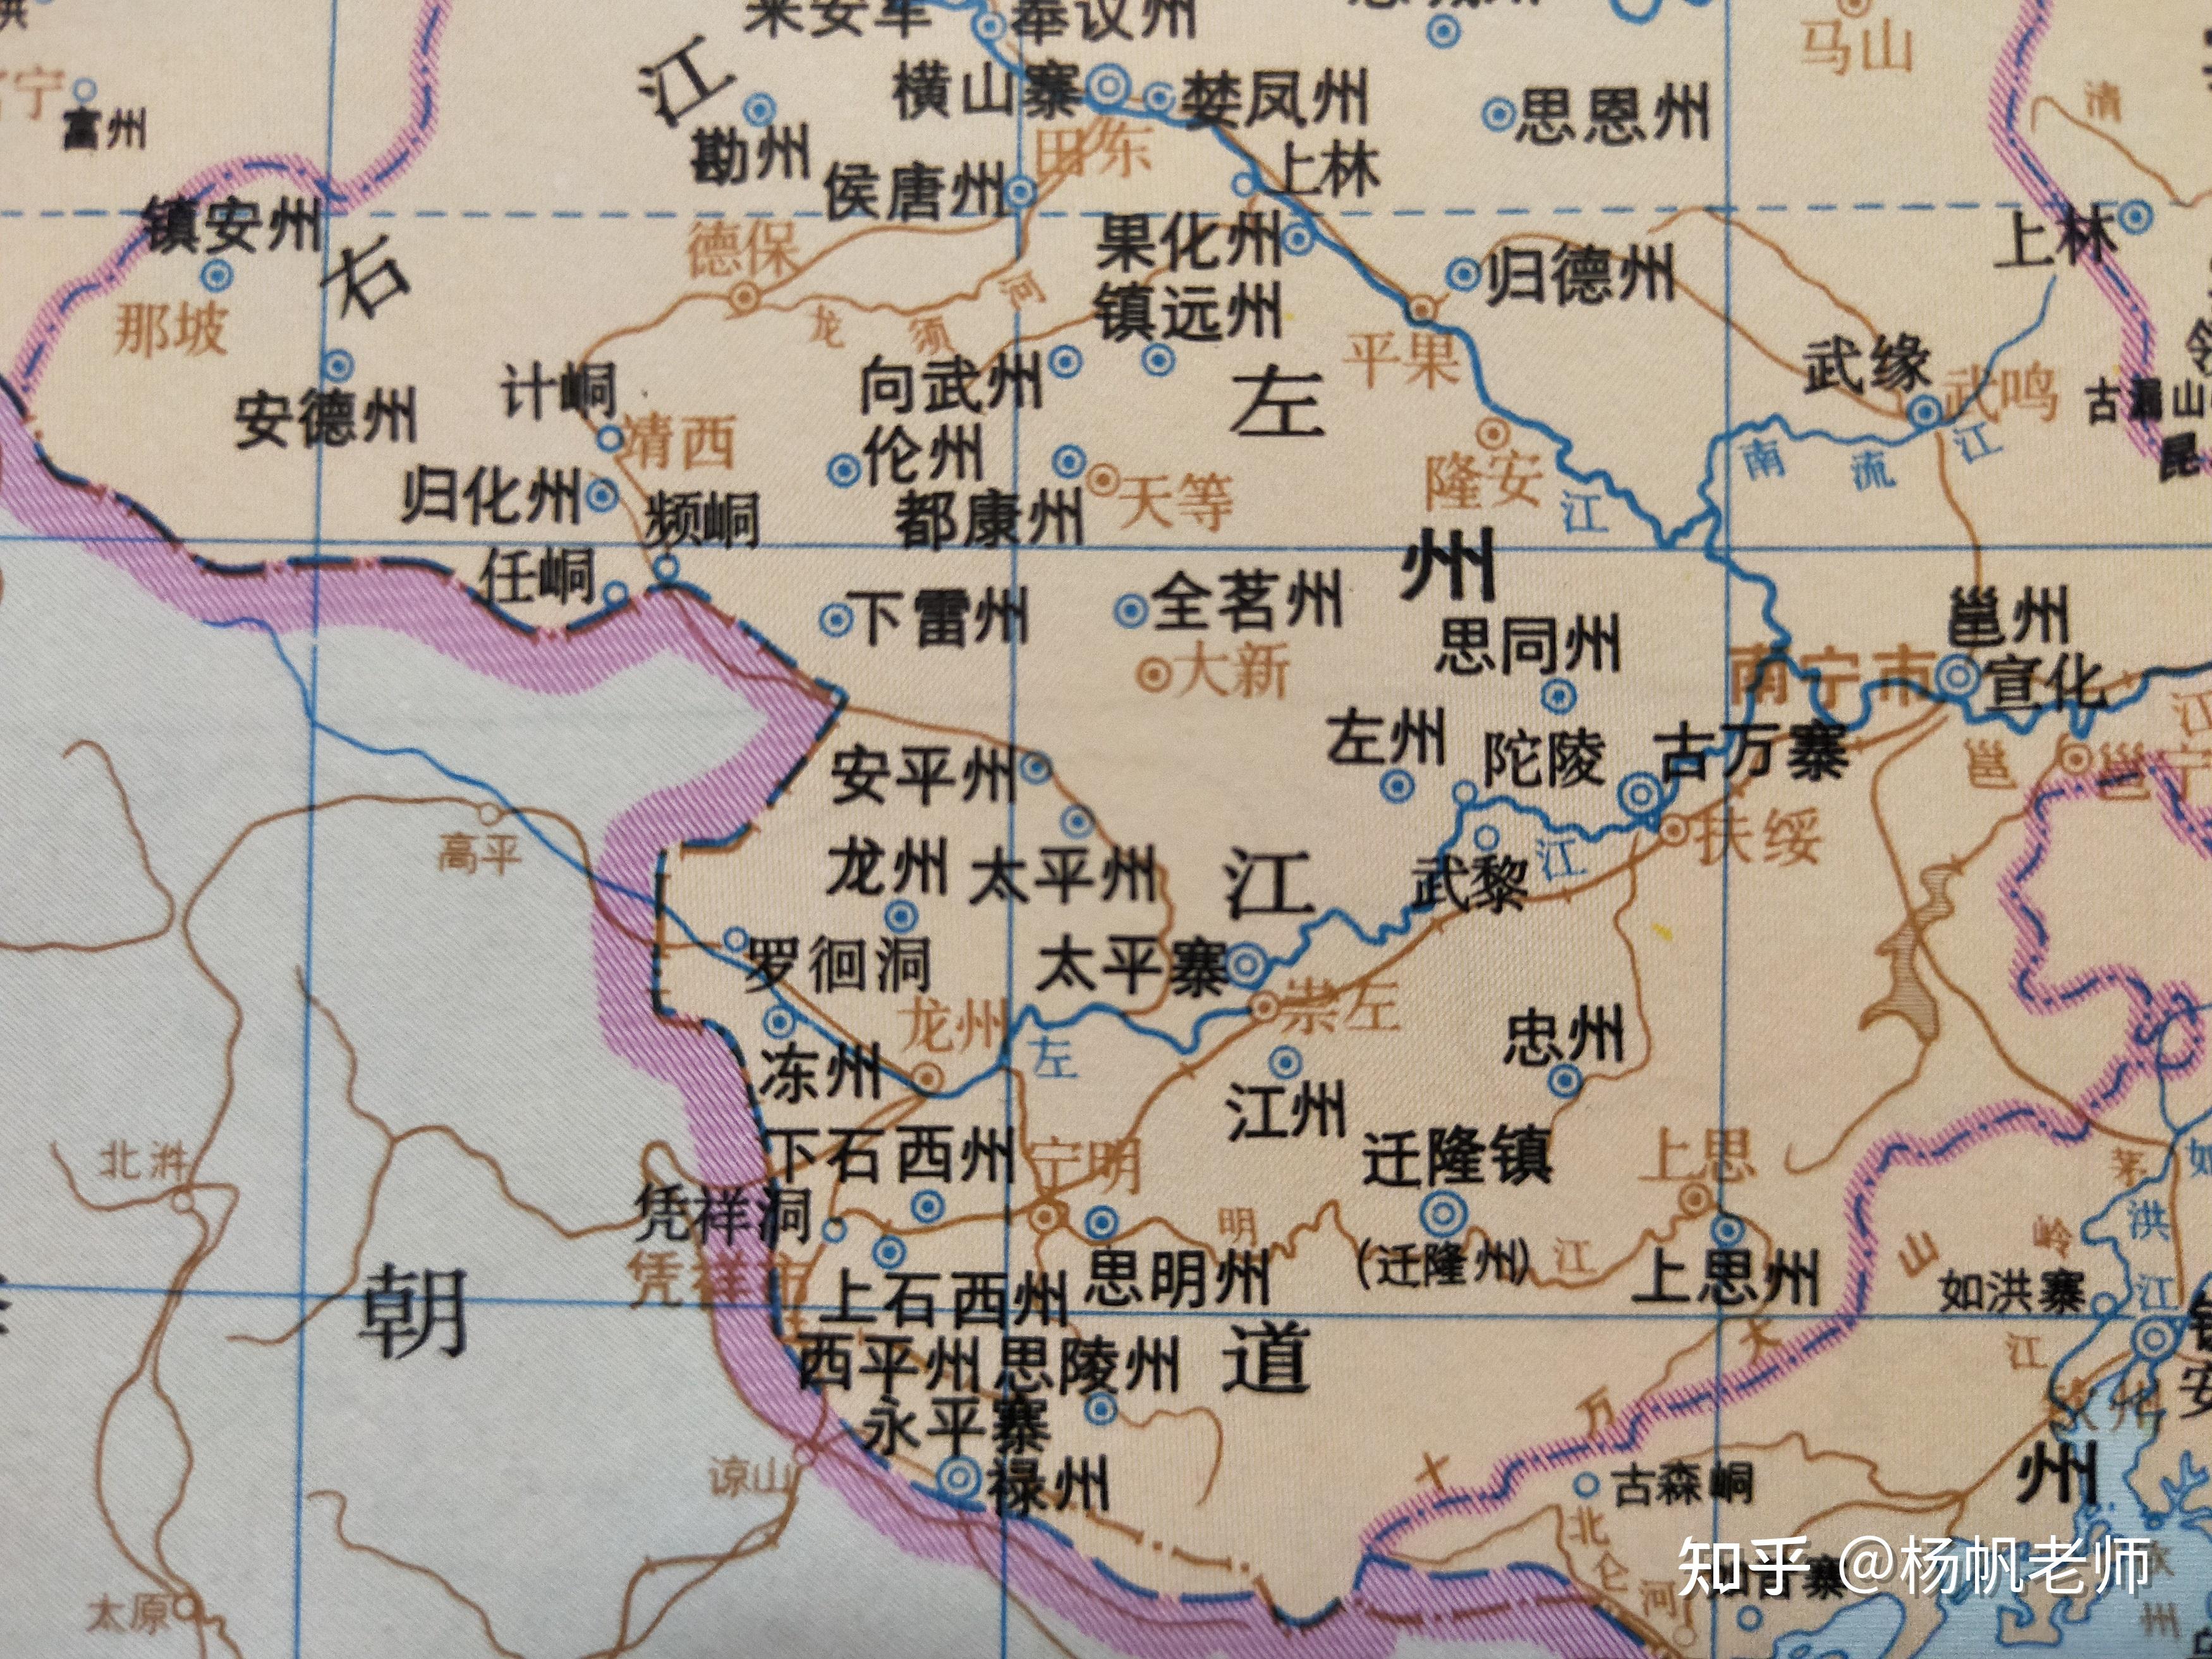 行政区划与北宋时基本相同,崇左仍属广南西路邕州